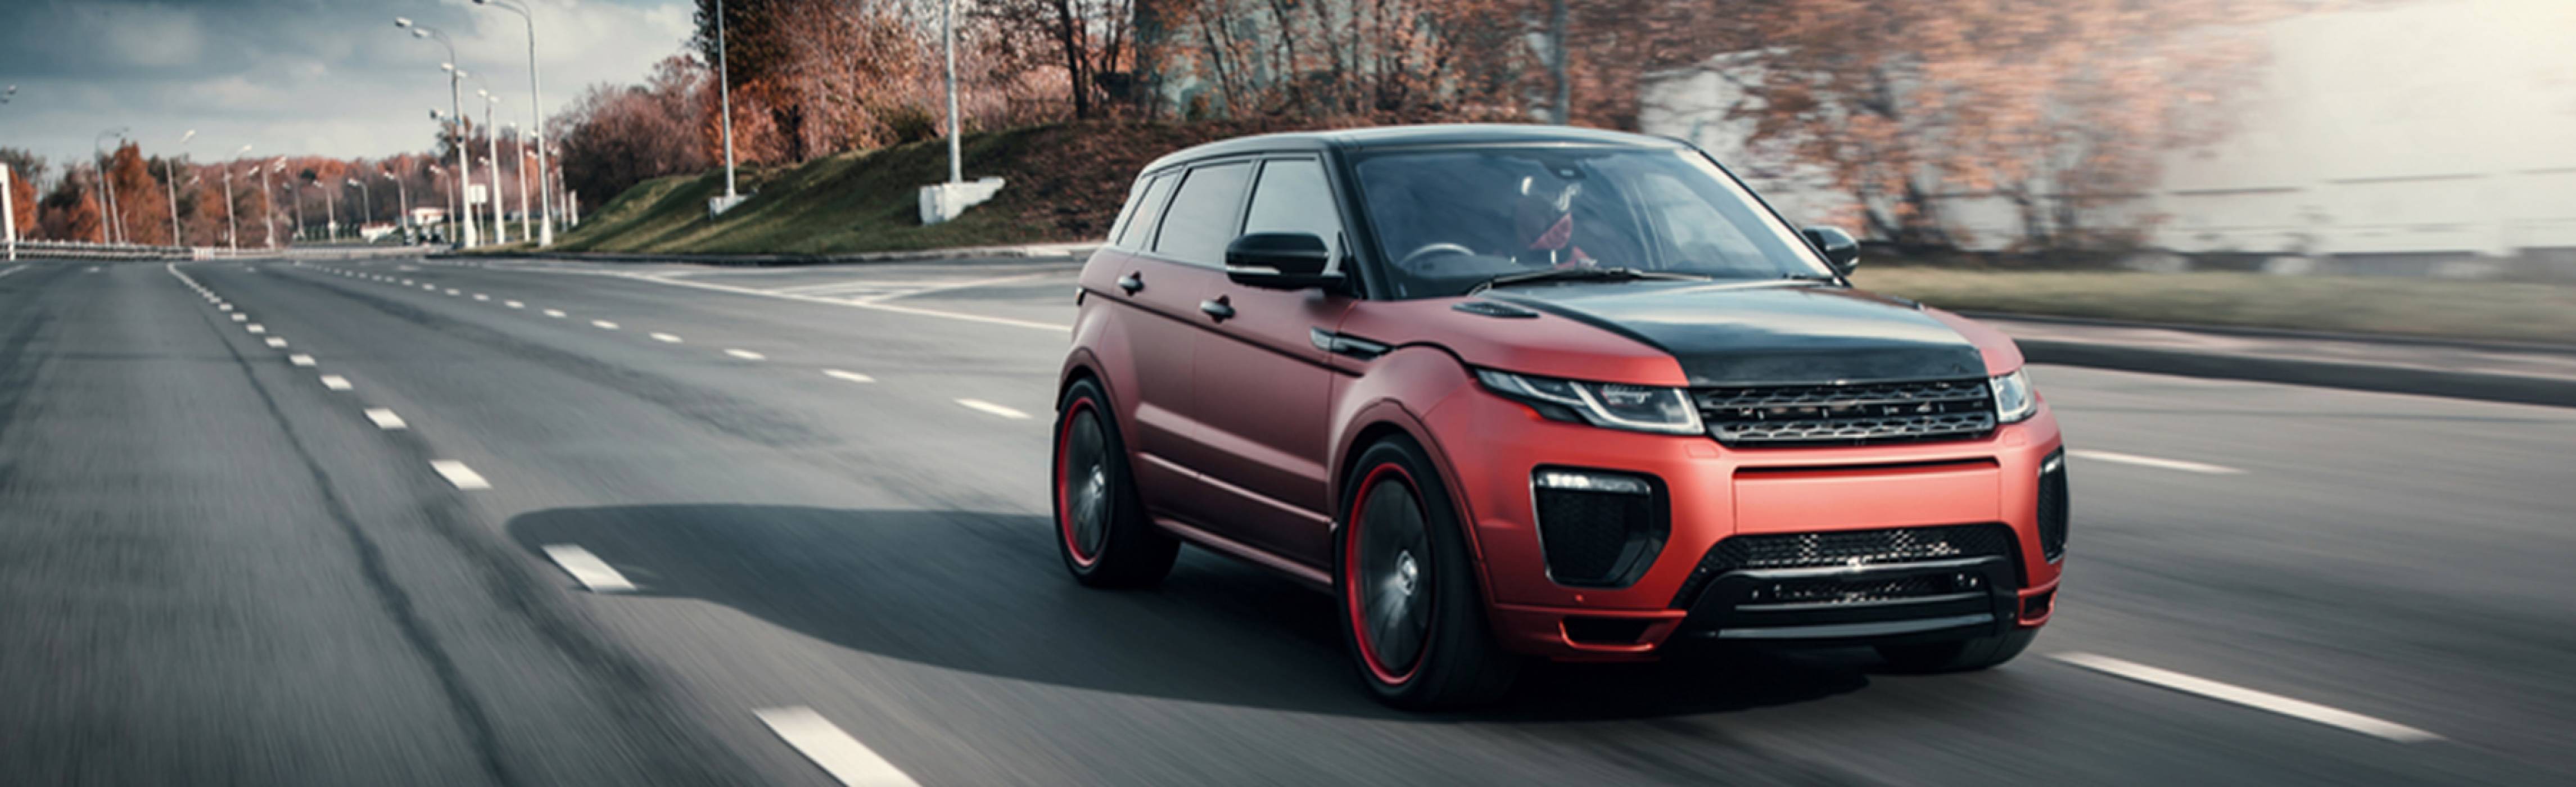 Решено е: Jaguar Land Rover ще произвежда само електромобили 